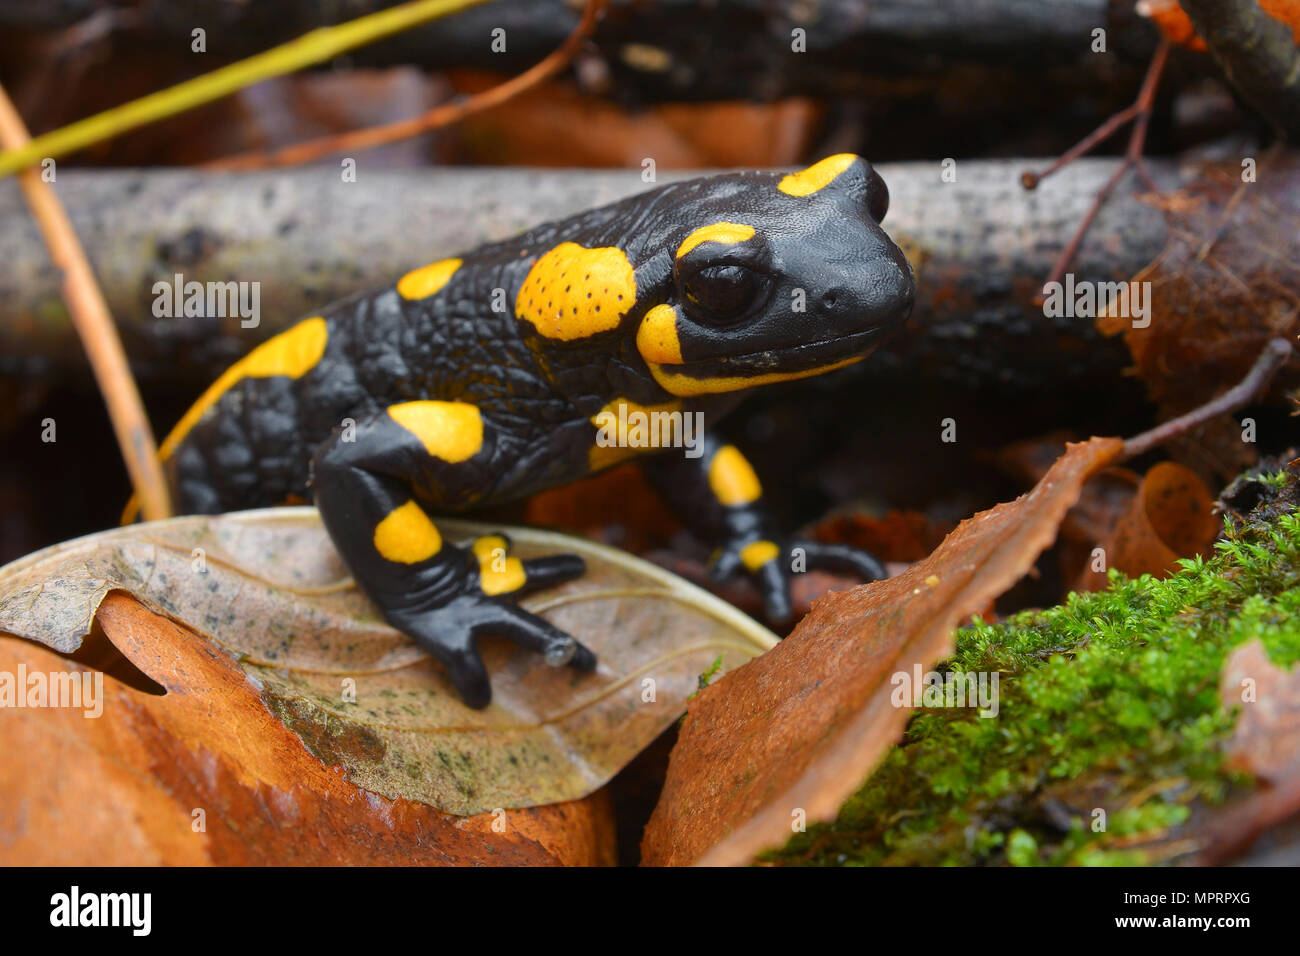 Closeup ritratto di una salamandra pezzata Foto Stock